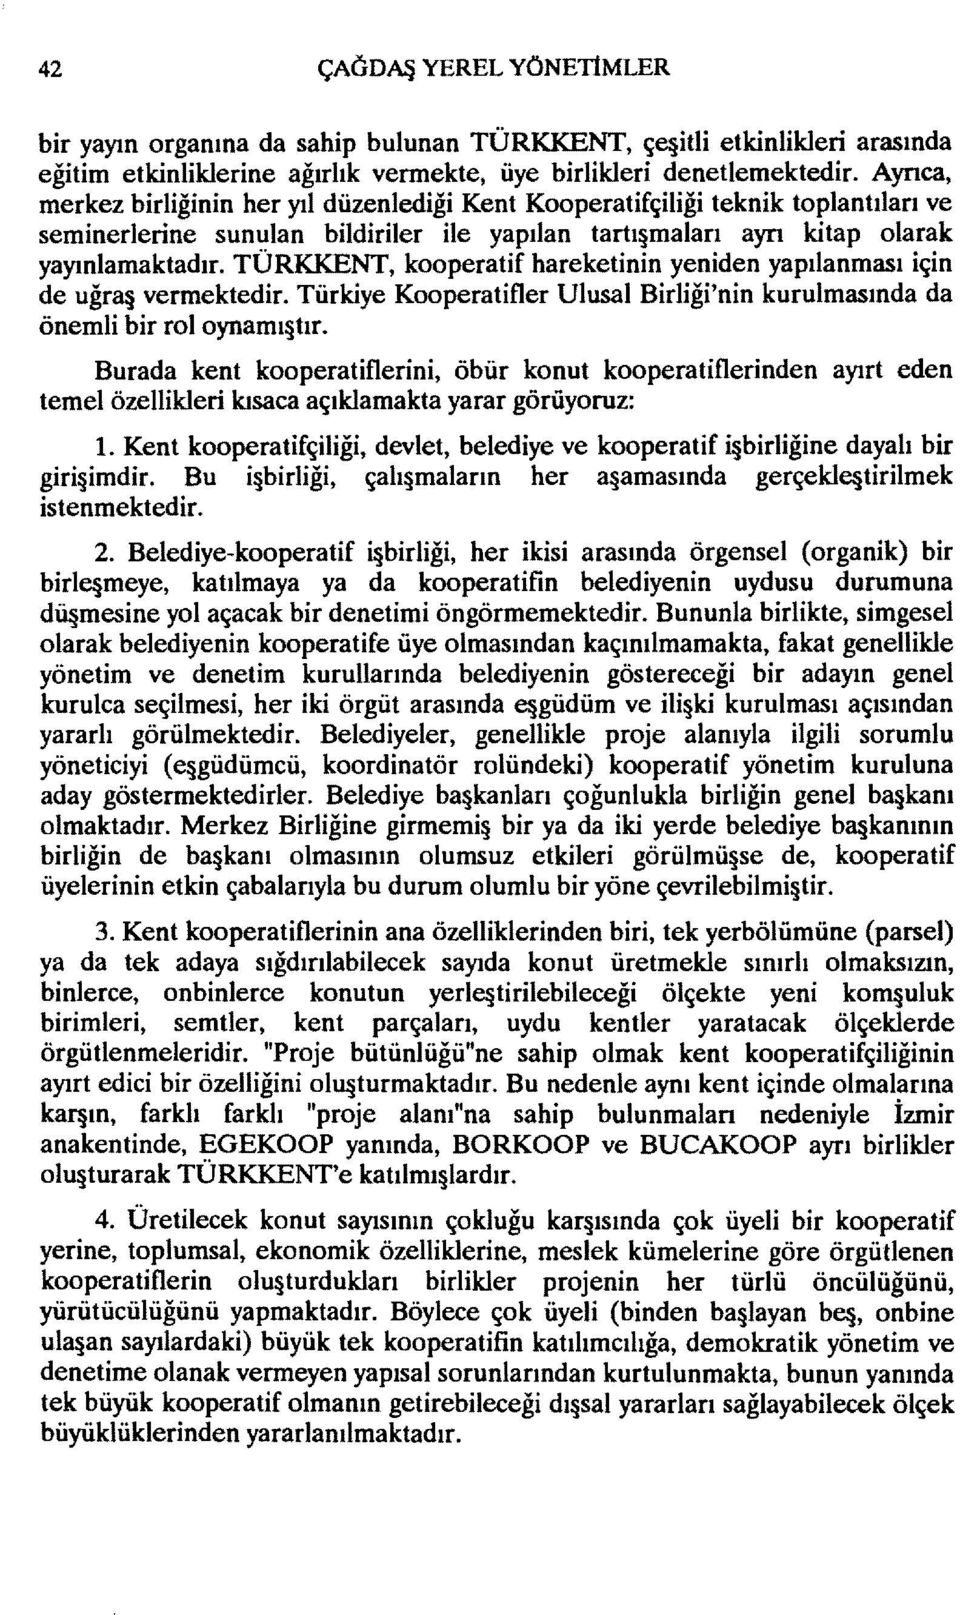 TÜRKKENT, kooperatif hareketinin yeniden yapılanması için de uğr3 vermektedir. Türkiye Kooperatifler Ulusal Birliği'nin kurulmasında da önemli bir rol oynamı tır.